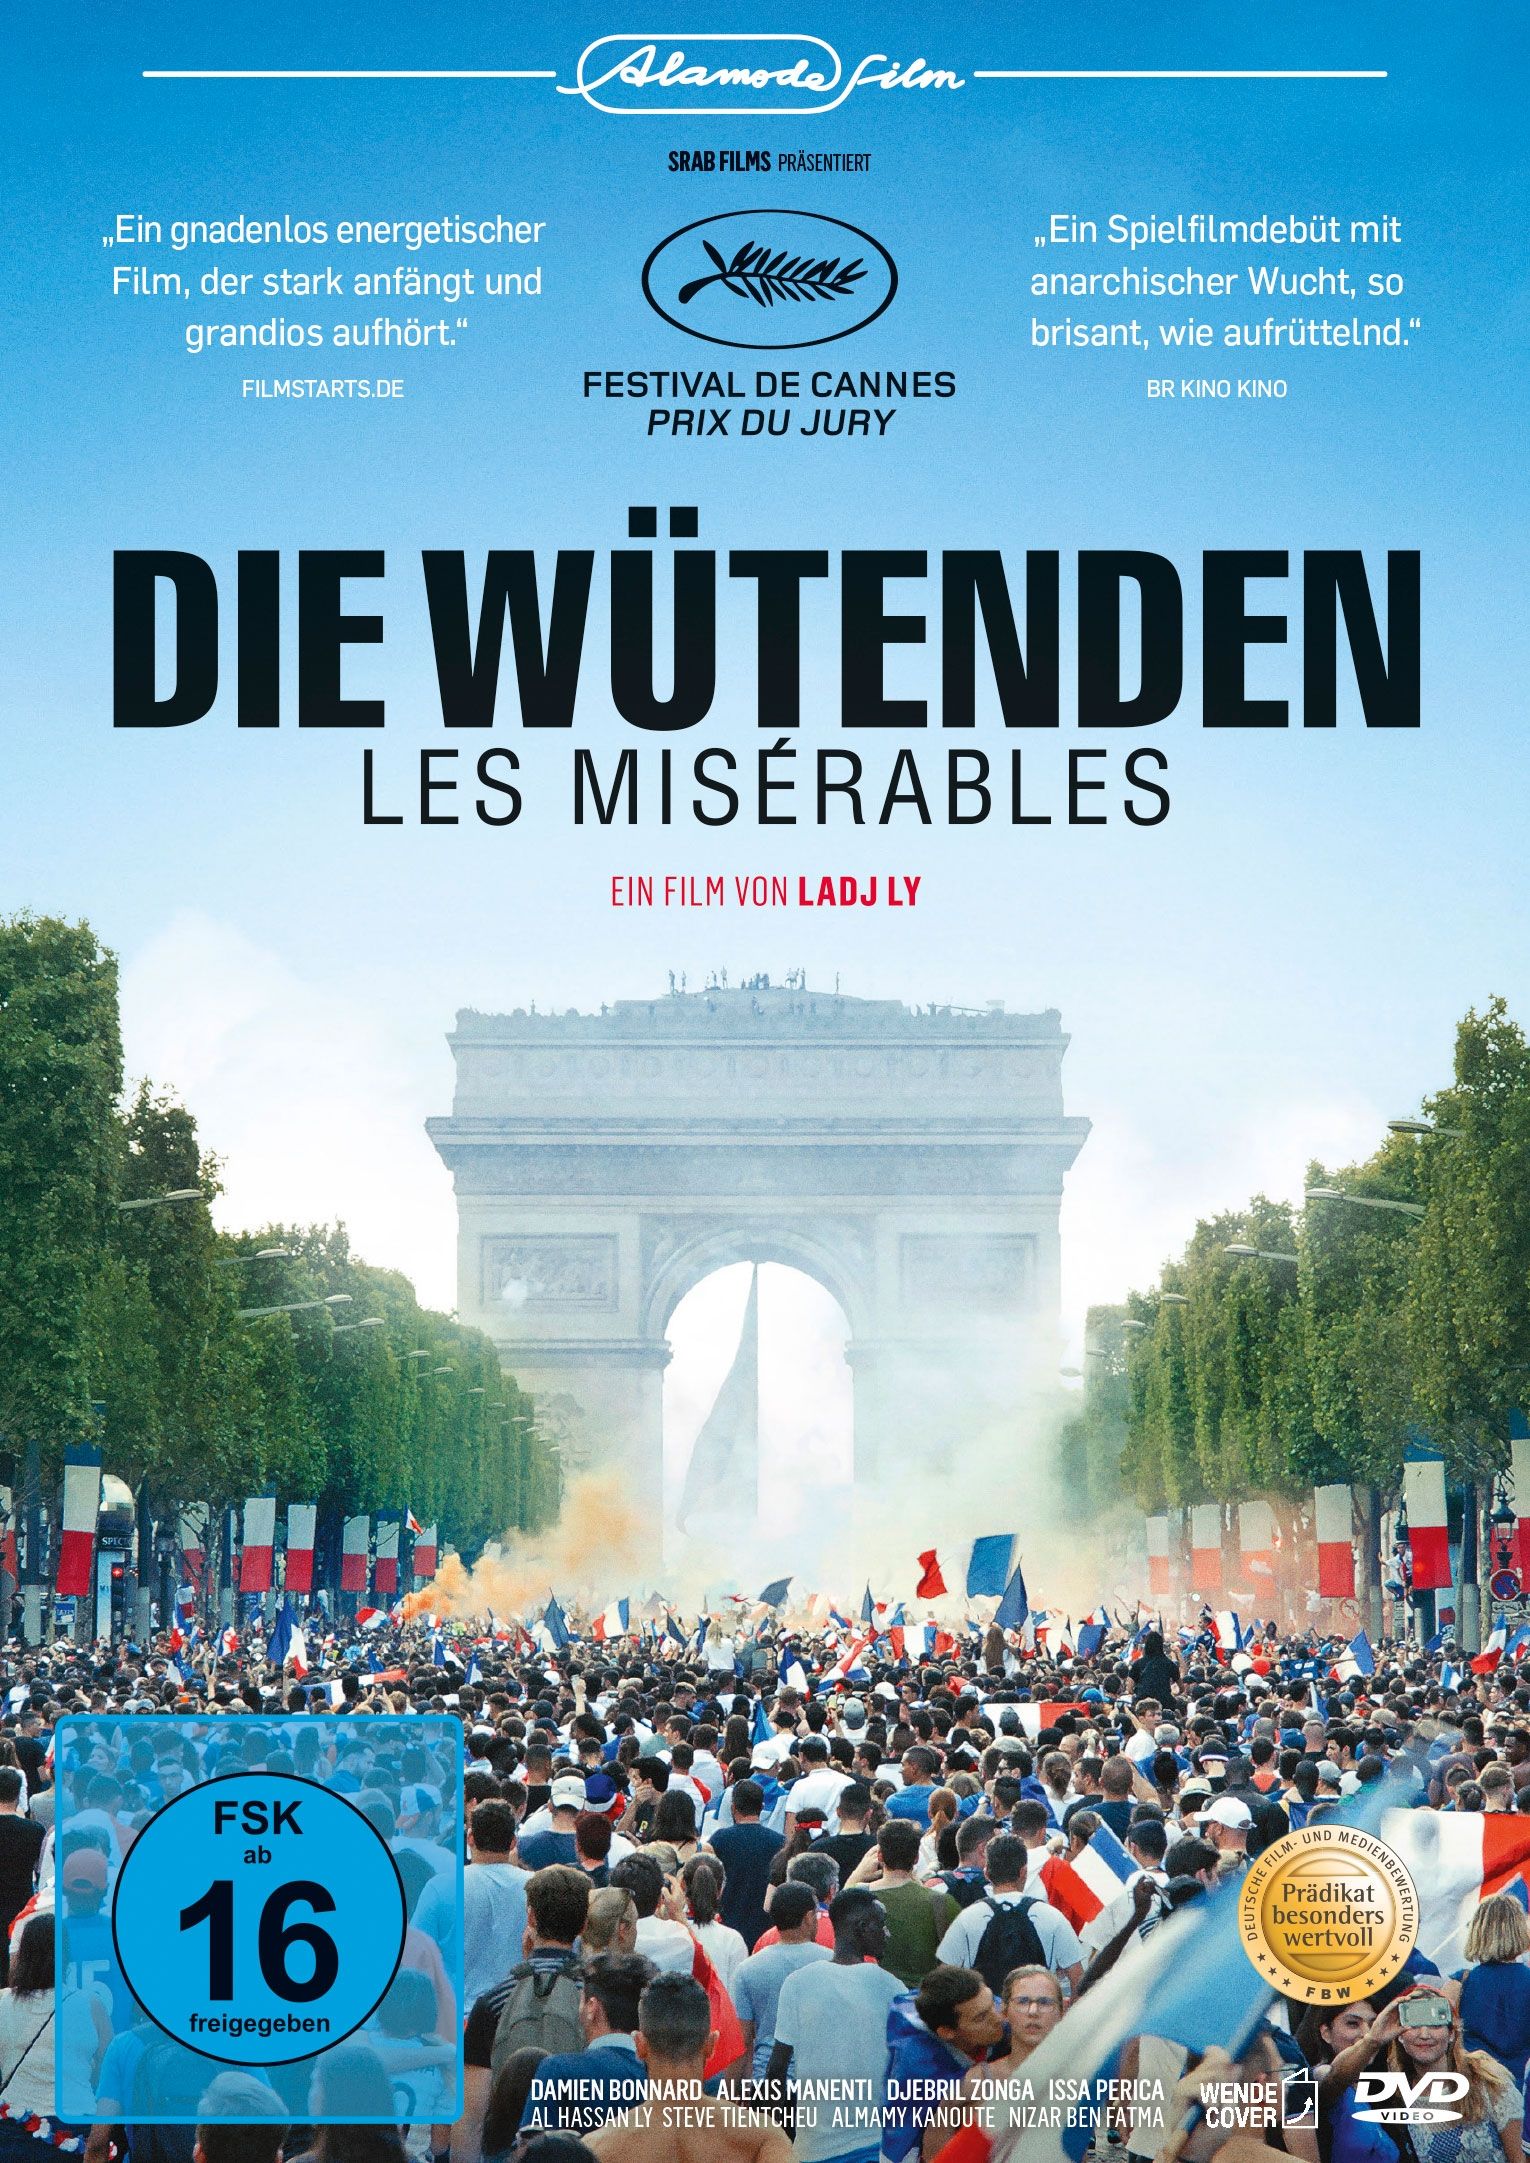 Wütenden, Die - Les Misérables